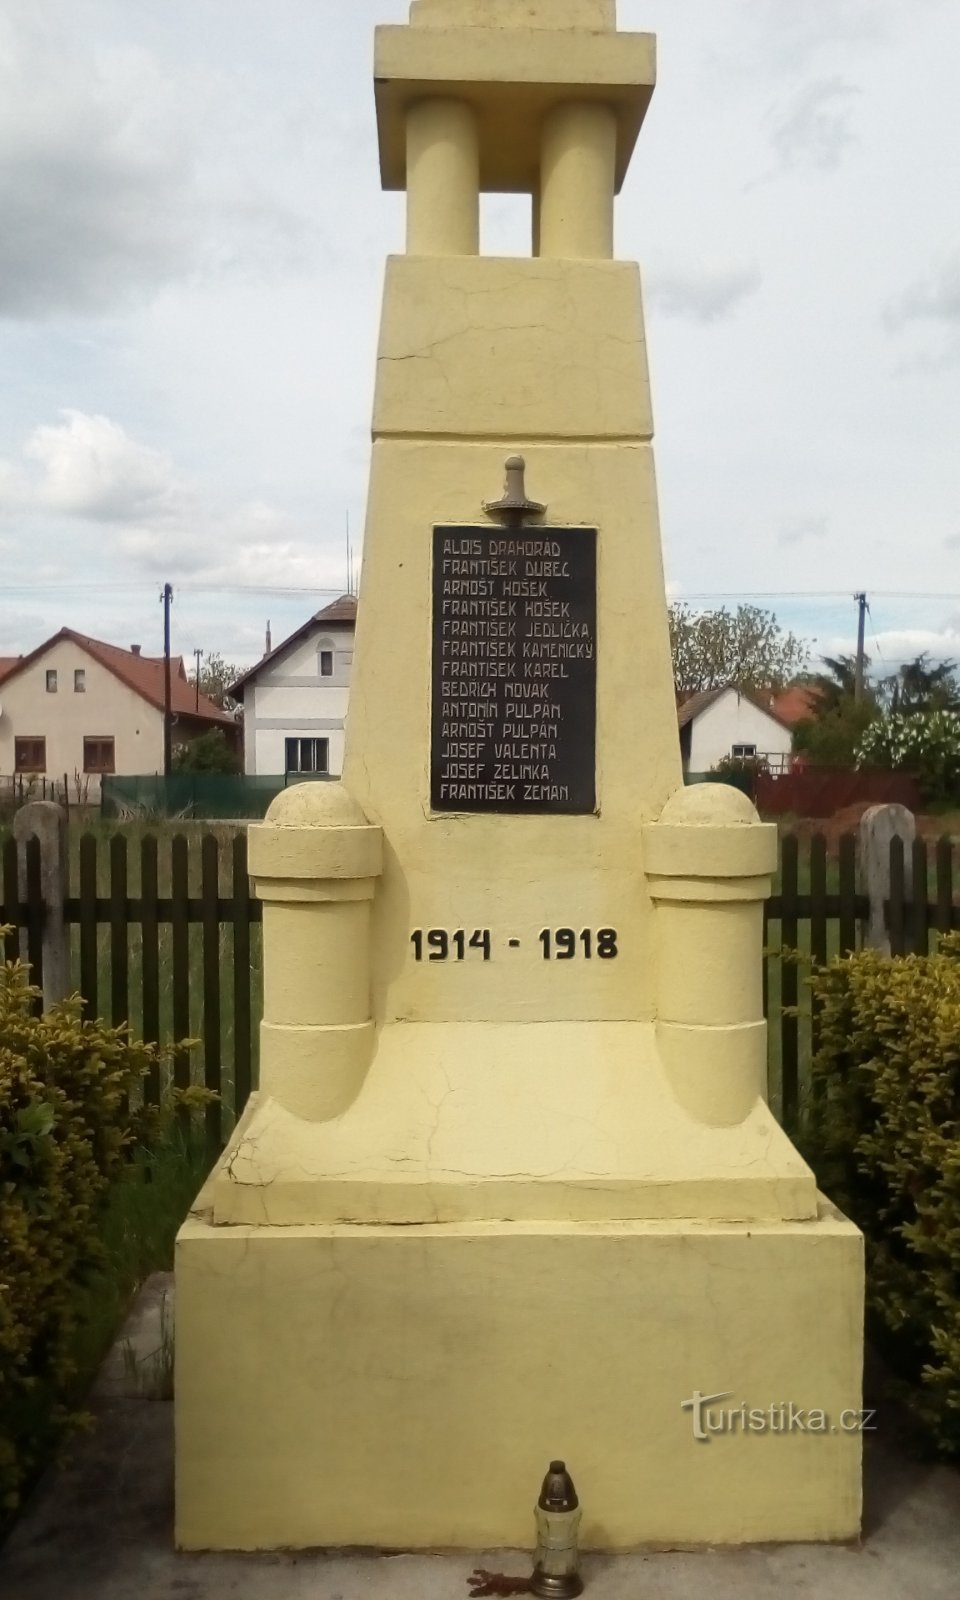 Đài tưởng niệm những người đã ngã xuống ở Kunětice